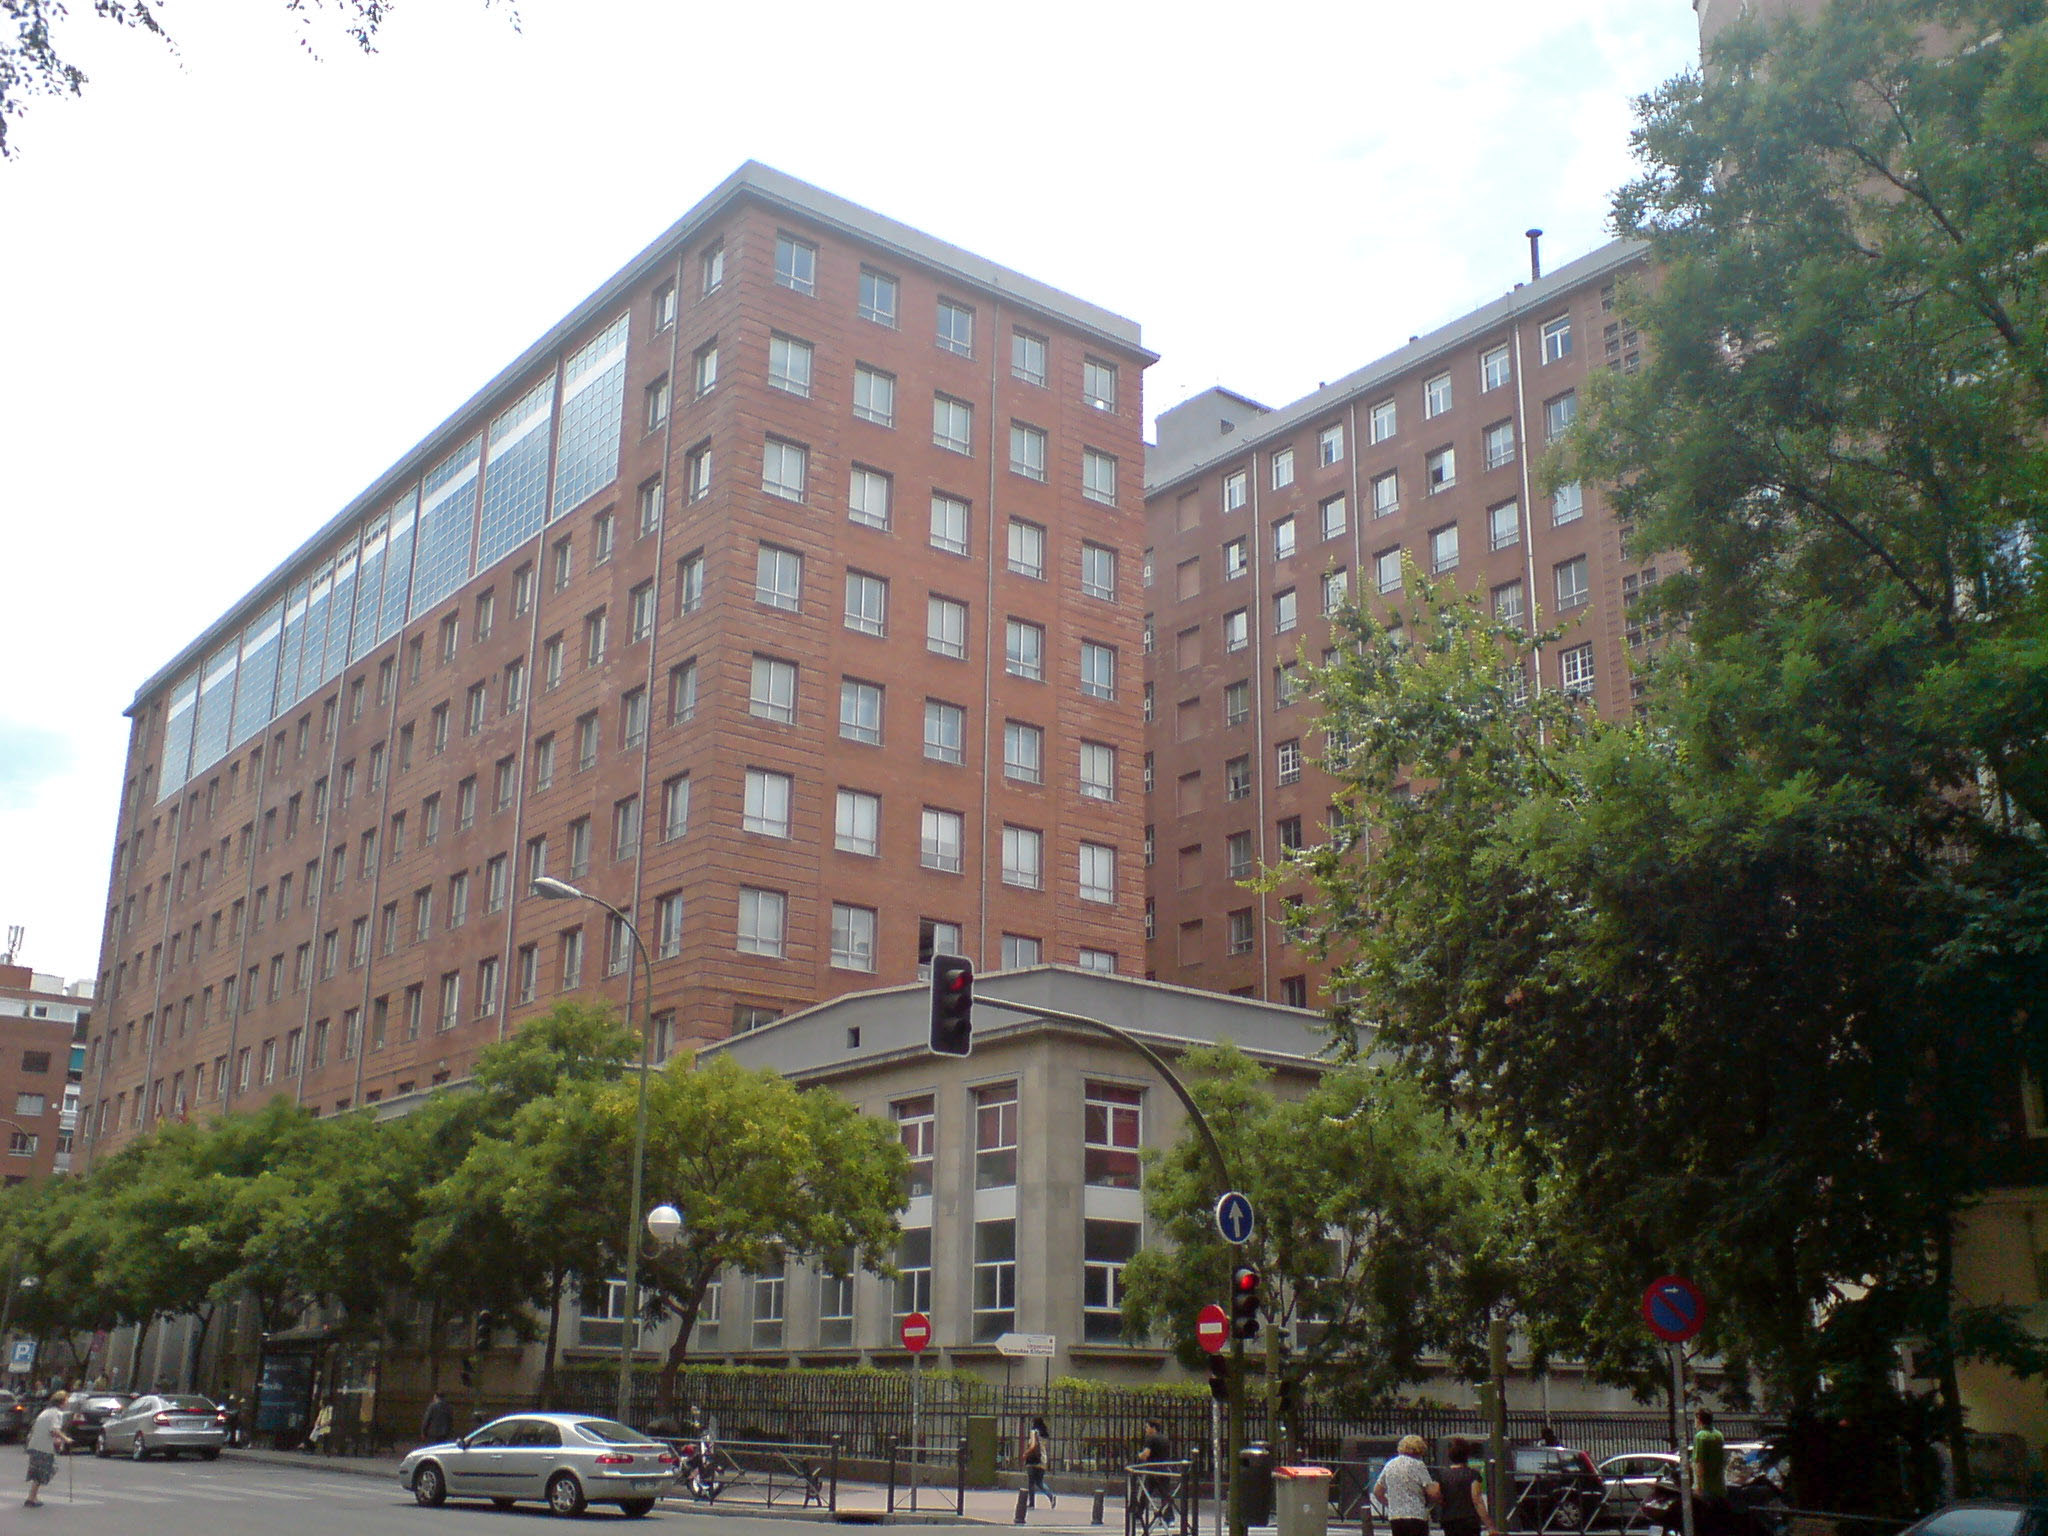 06 Hospital de la Princesa - Madrid